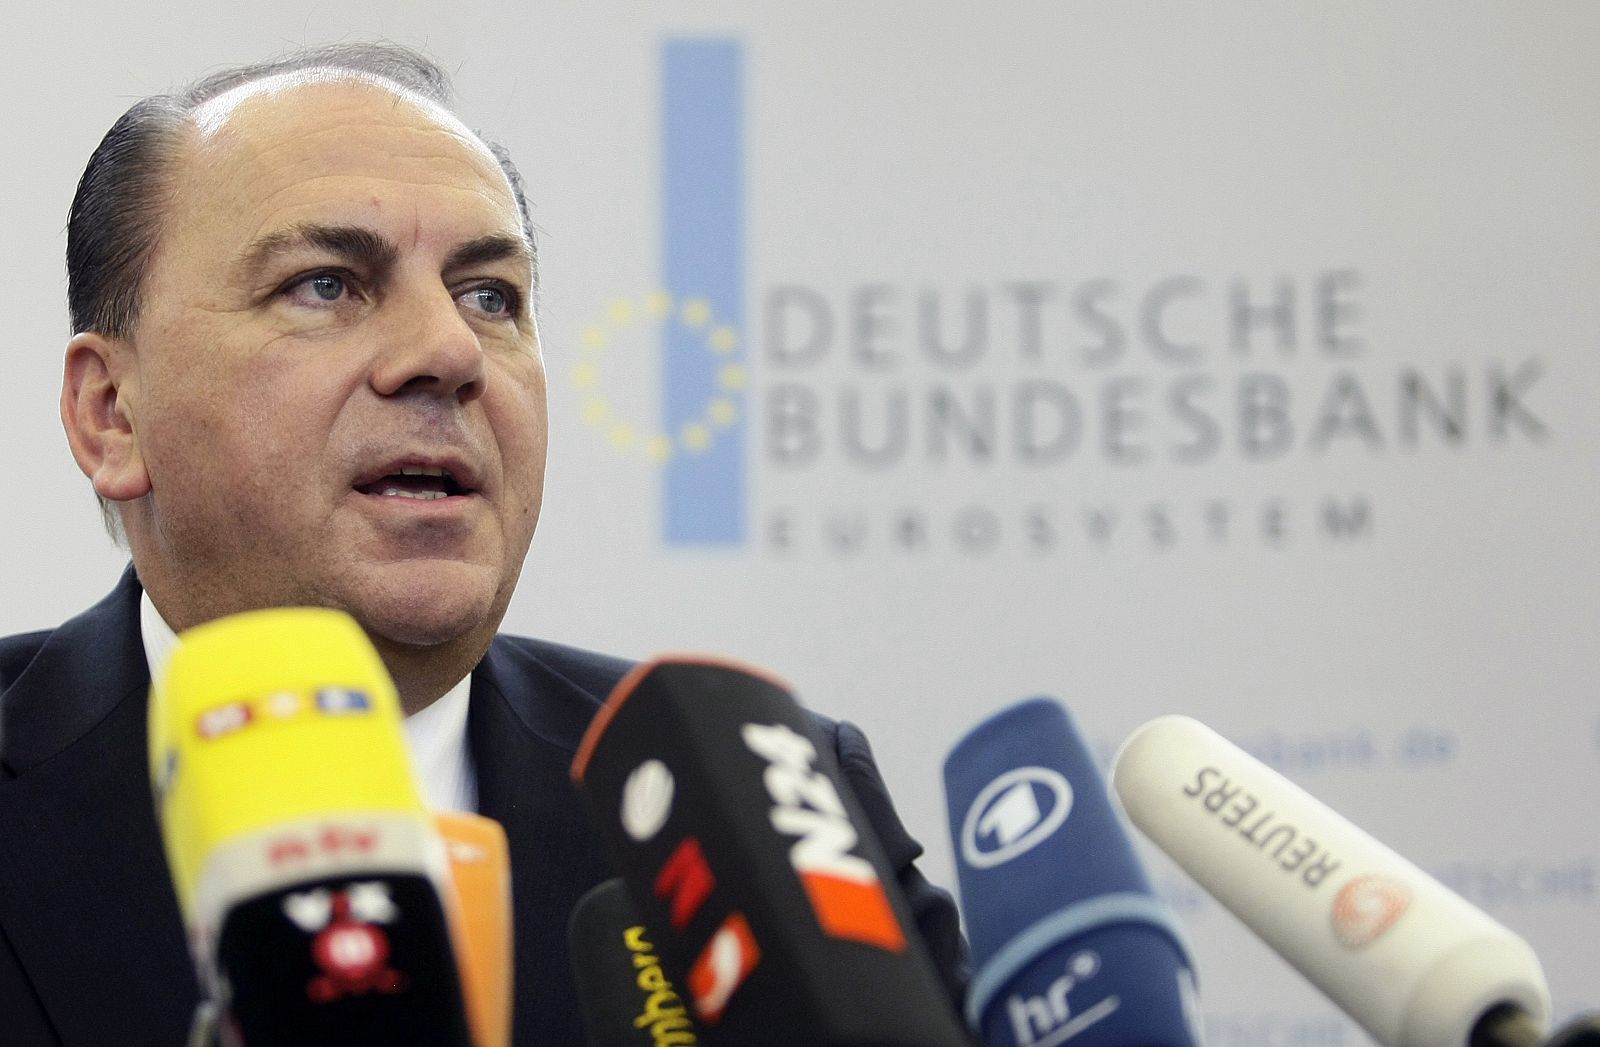 El presidente del Bundesbank, Axel Weber, durante una rueda de prensa en Frankfurt